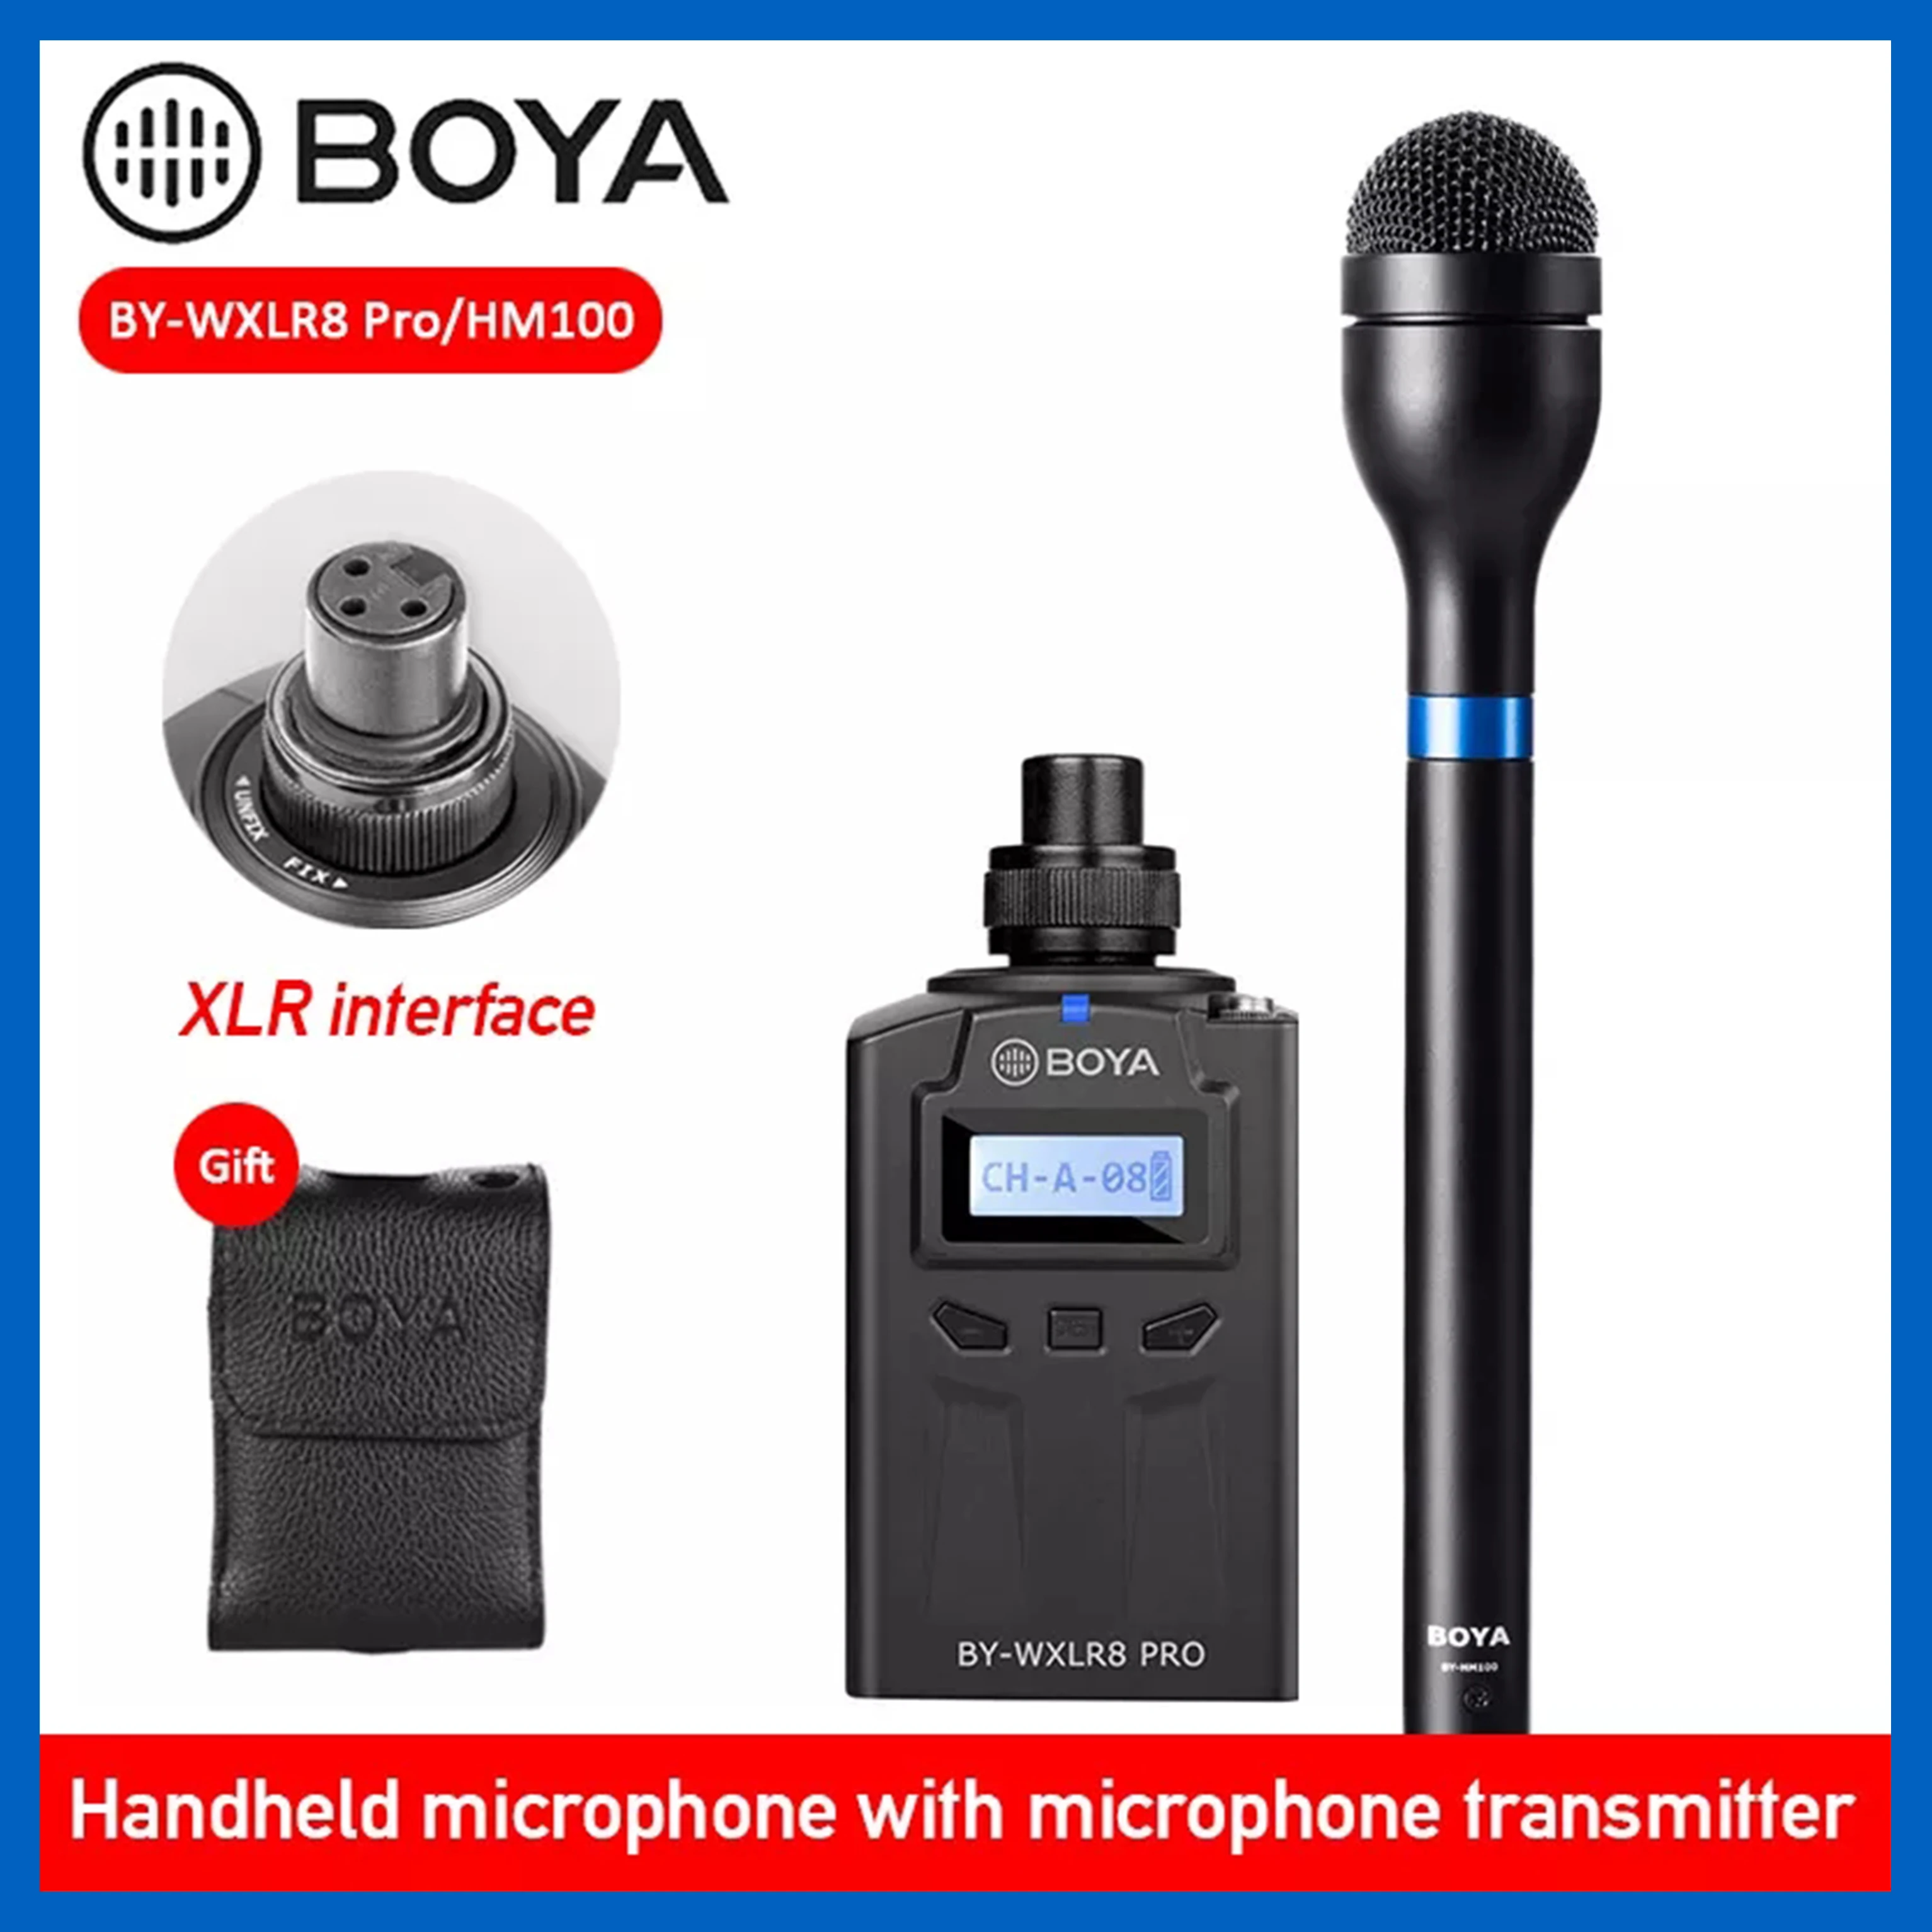 

BOYA BY-HM100 ручной микрофон, корпус из алюминиевого сплава, всенаправленный динамический микрофон XLR, выход для интервью ENG EFP